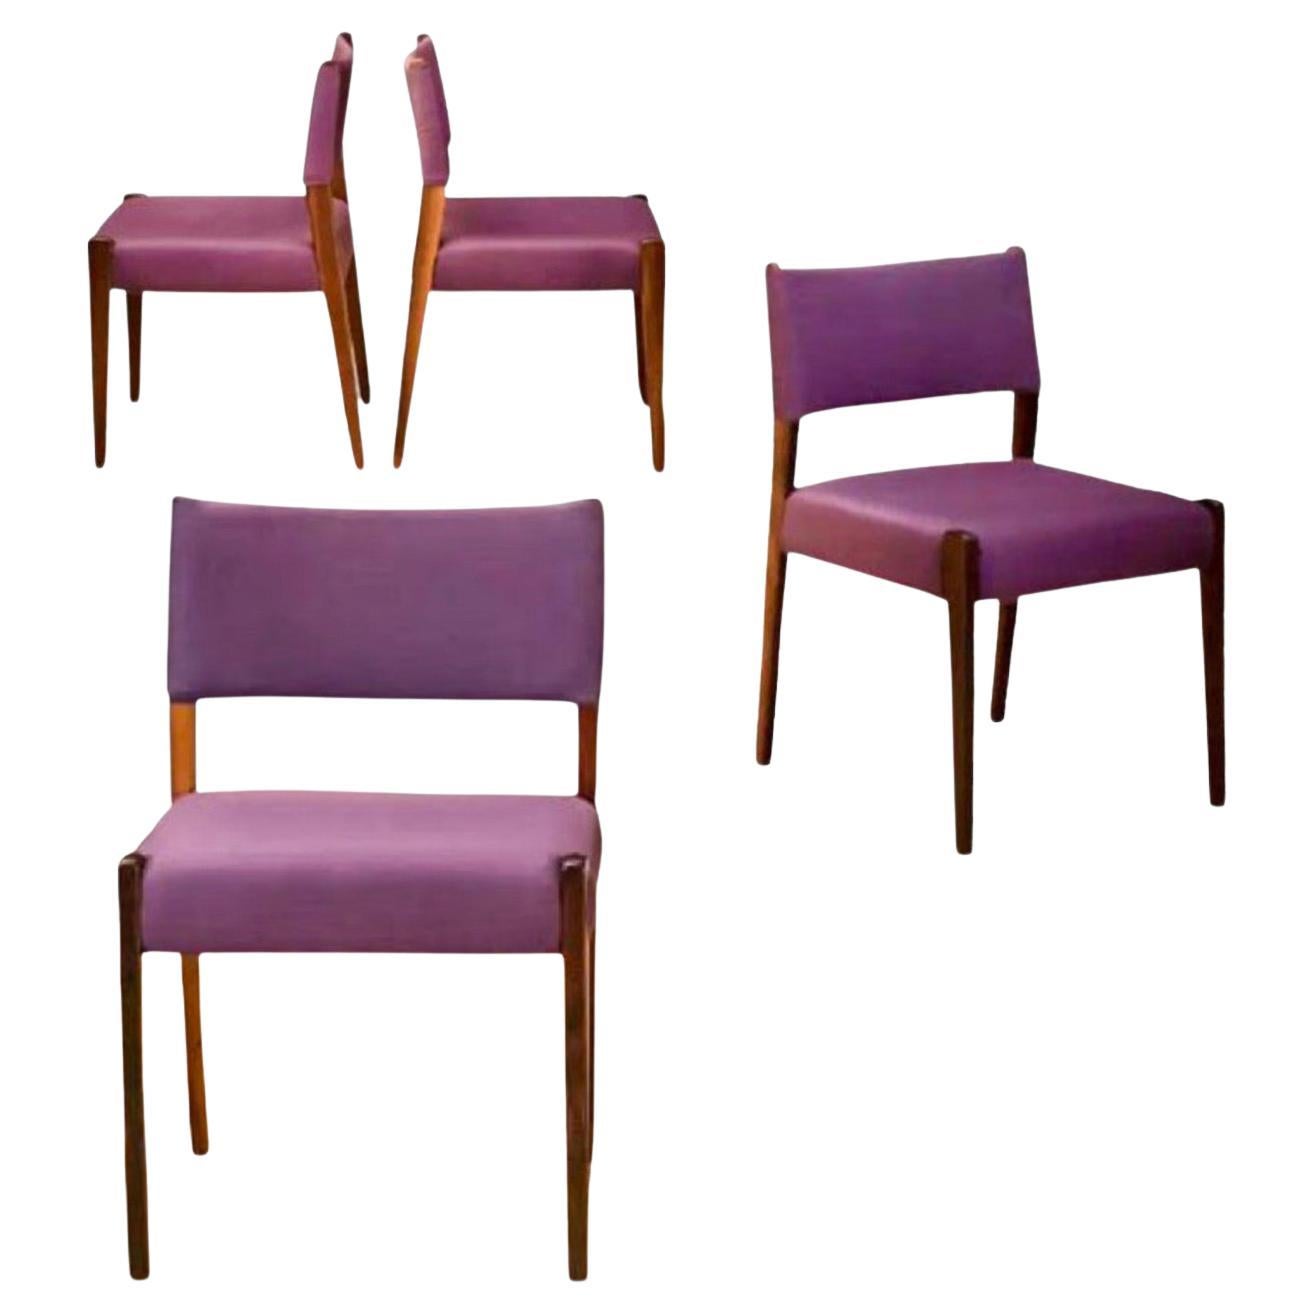 Sergio Rodrigues pour Oca, ensemble de 4 chaises de salle à manger Jacarandá, Brésil, années 1950. Jeu de 4 pièces extrêmement rare, qui semble être entièrement d'origine. Le textile d'origine est décoloré et présente une certaine usure. Chaque